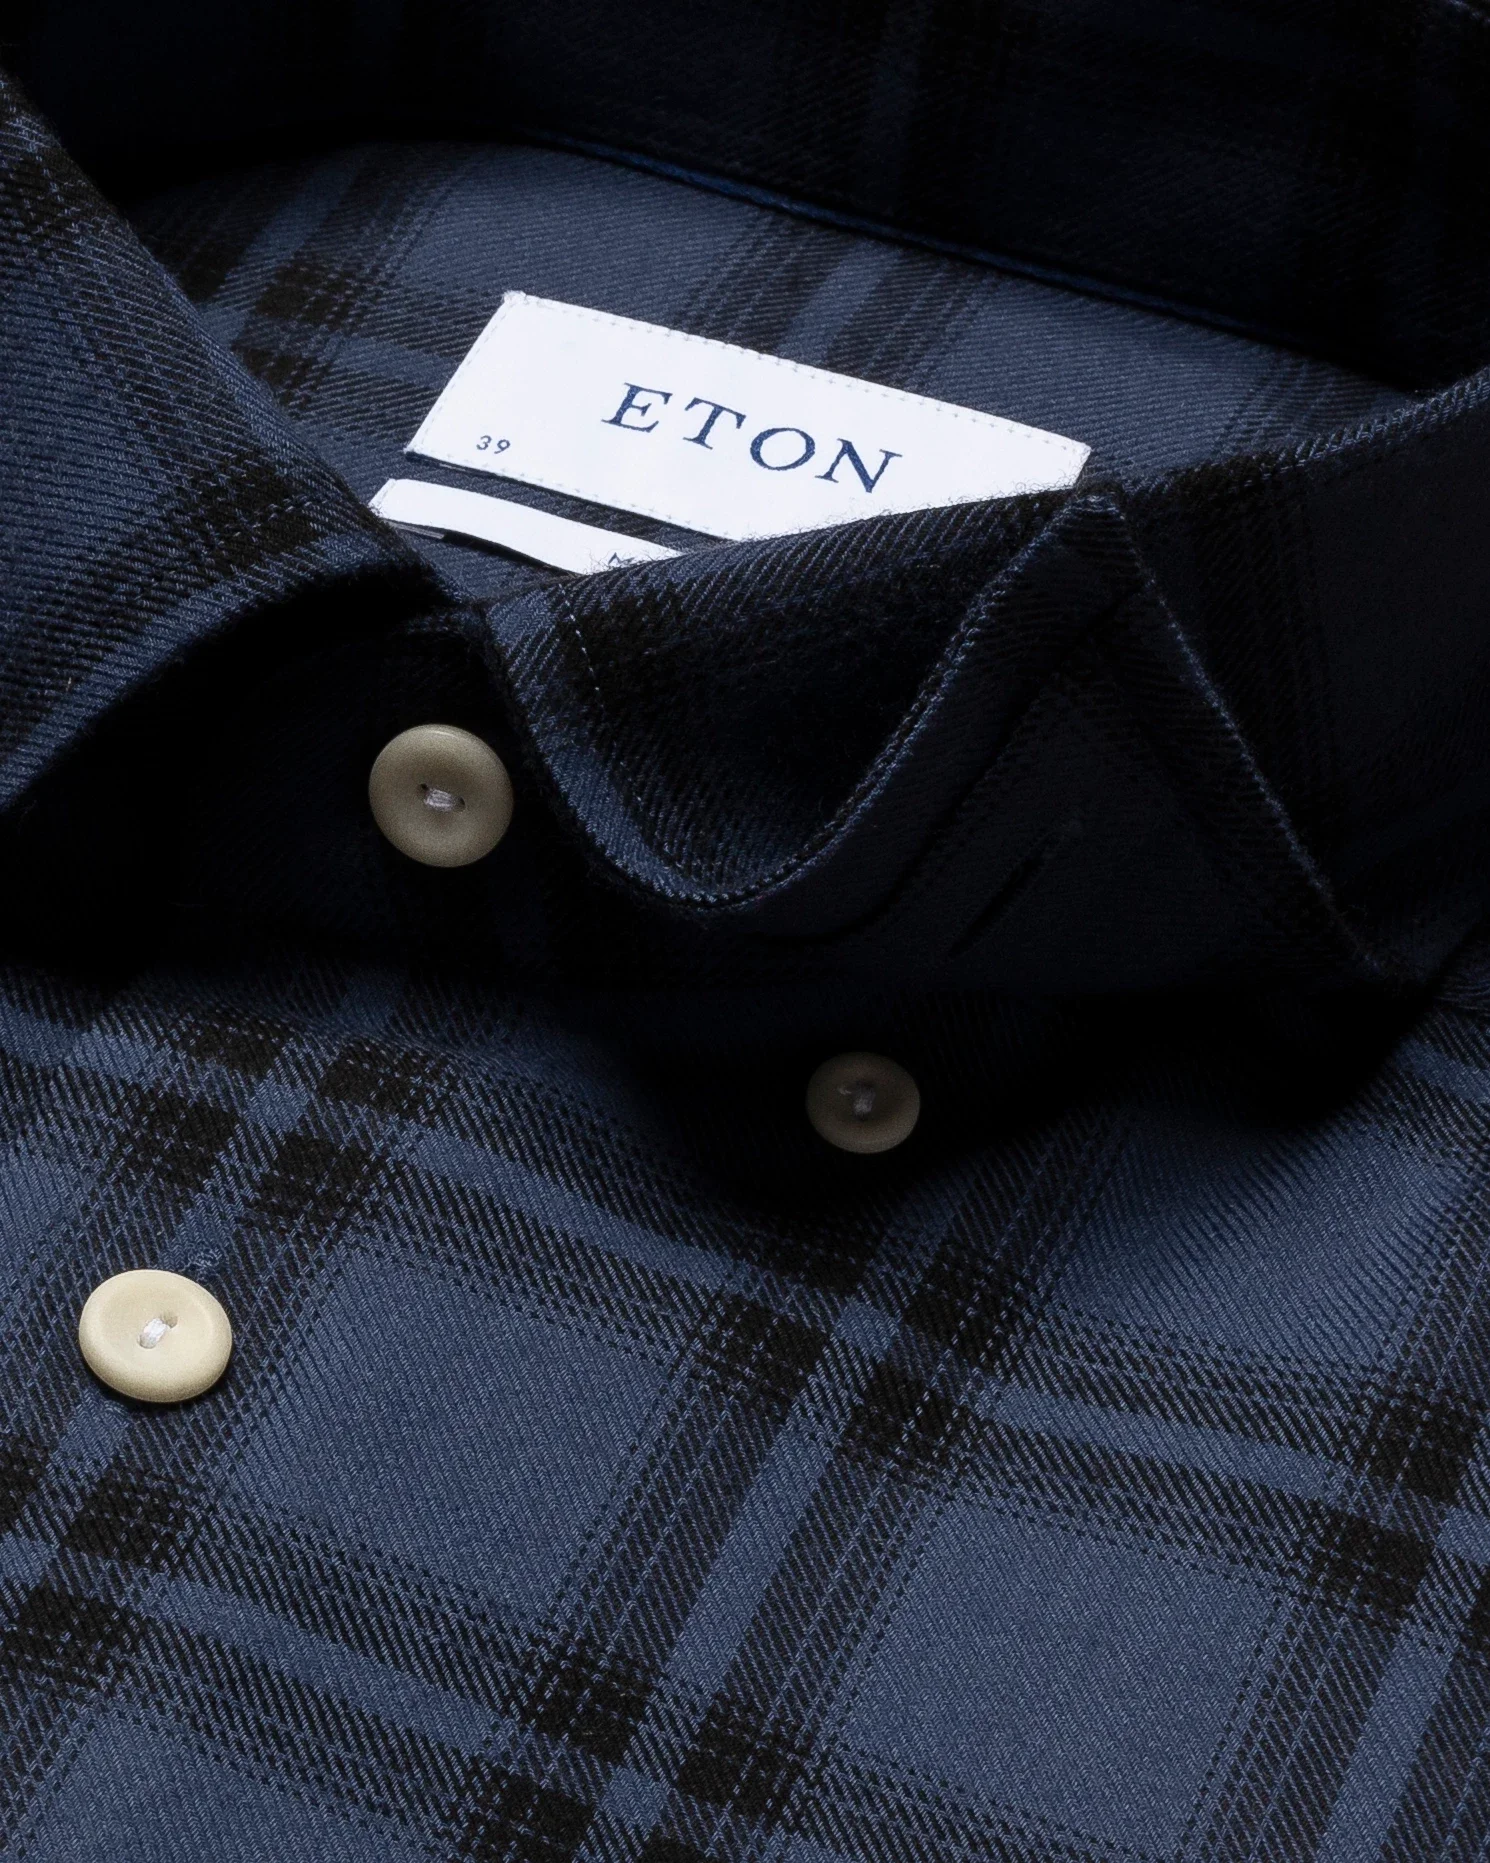 Eton - dark blue brushed merino wool shirt